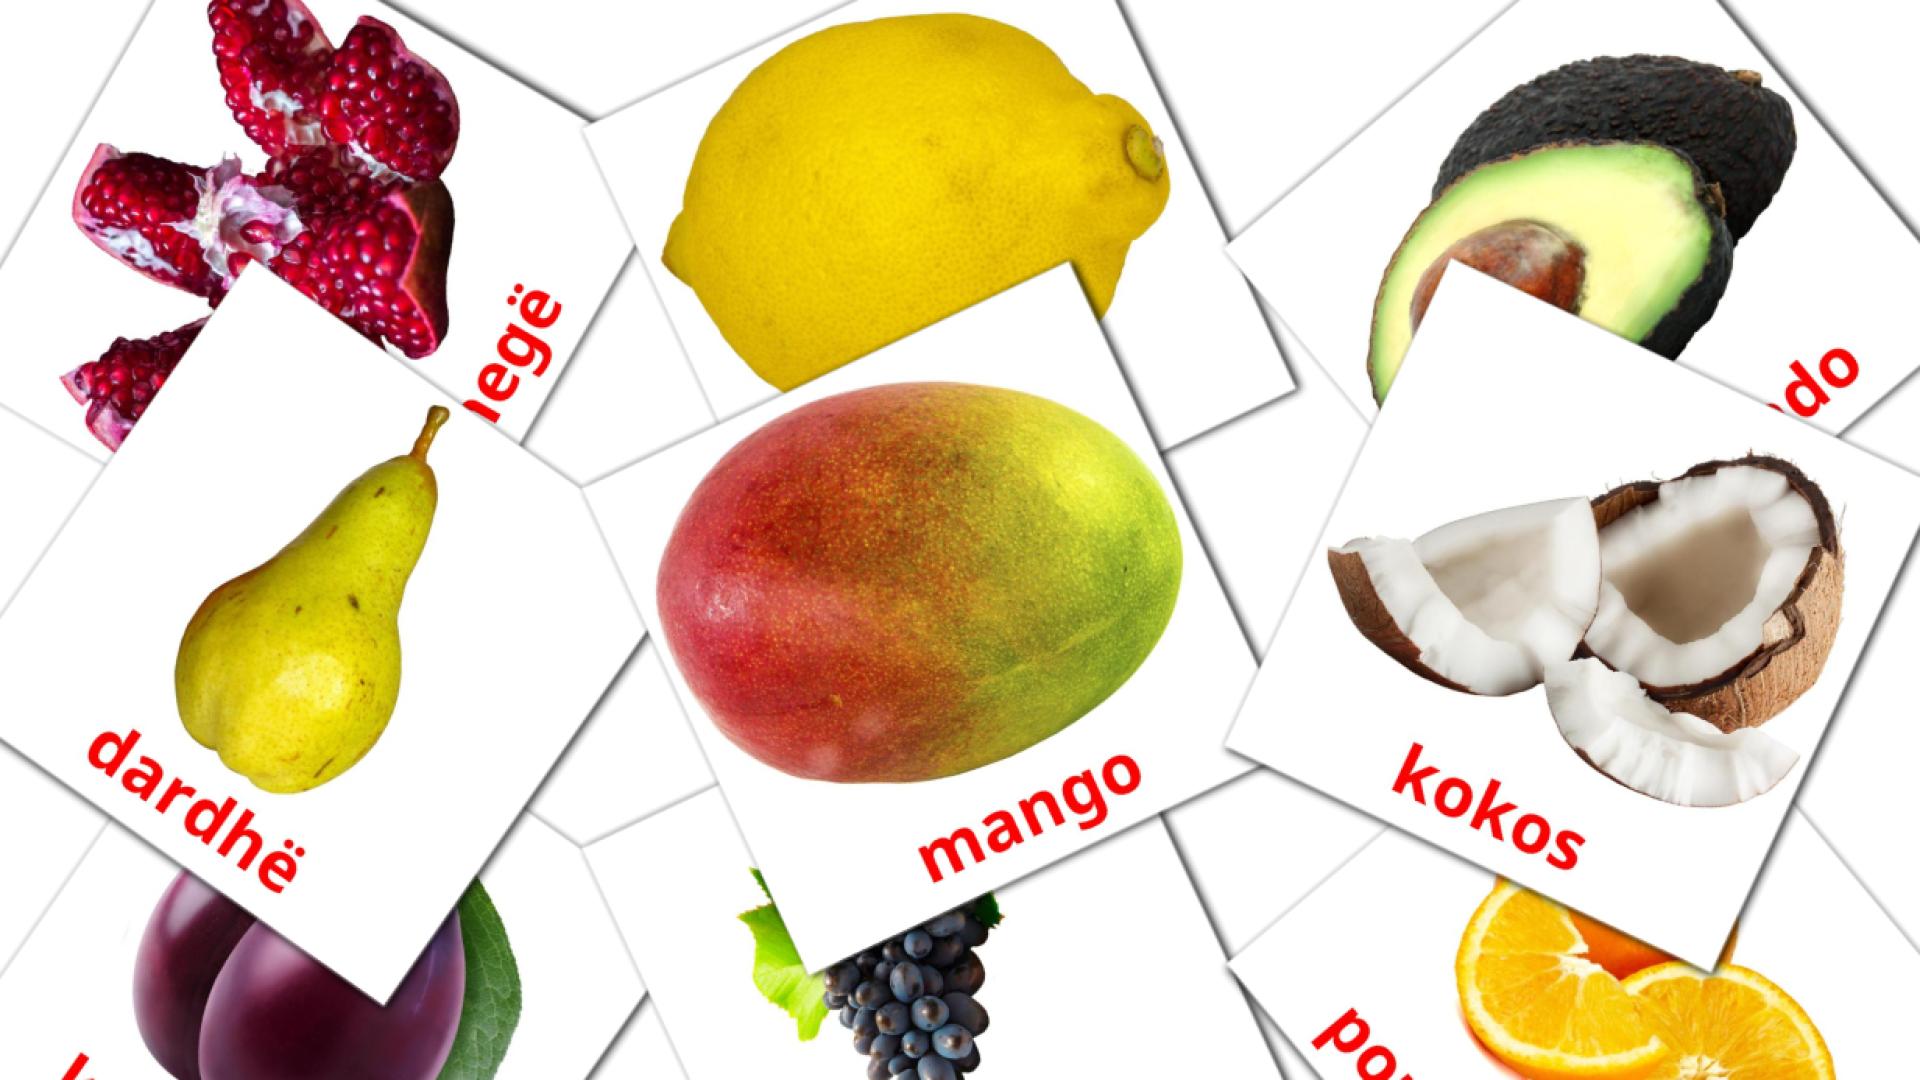 Bildkarten für Fruta